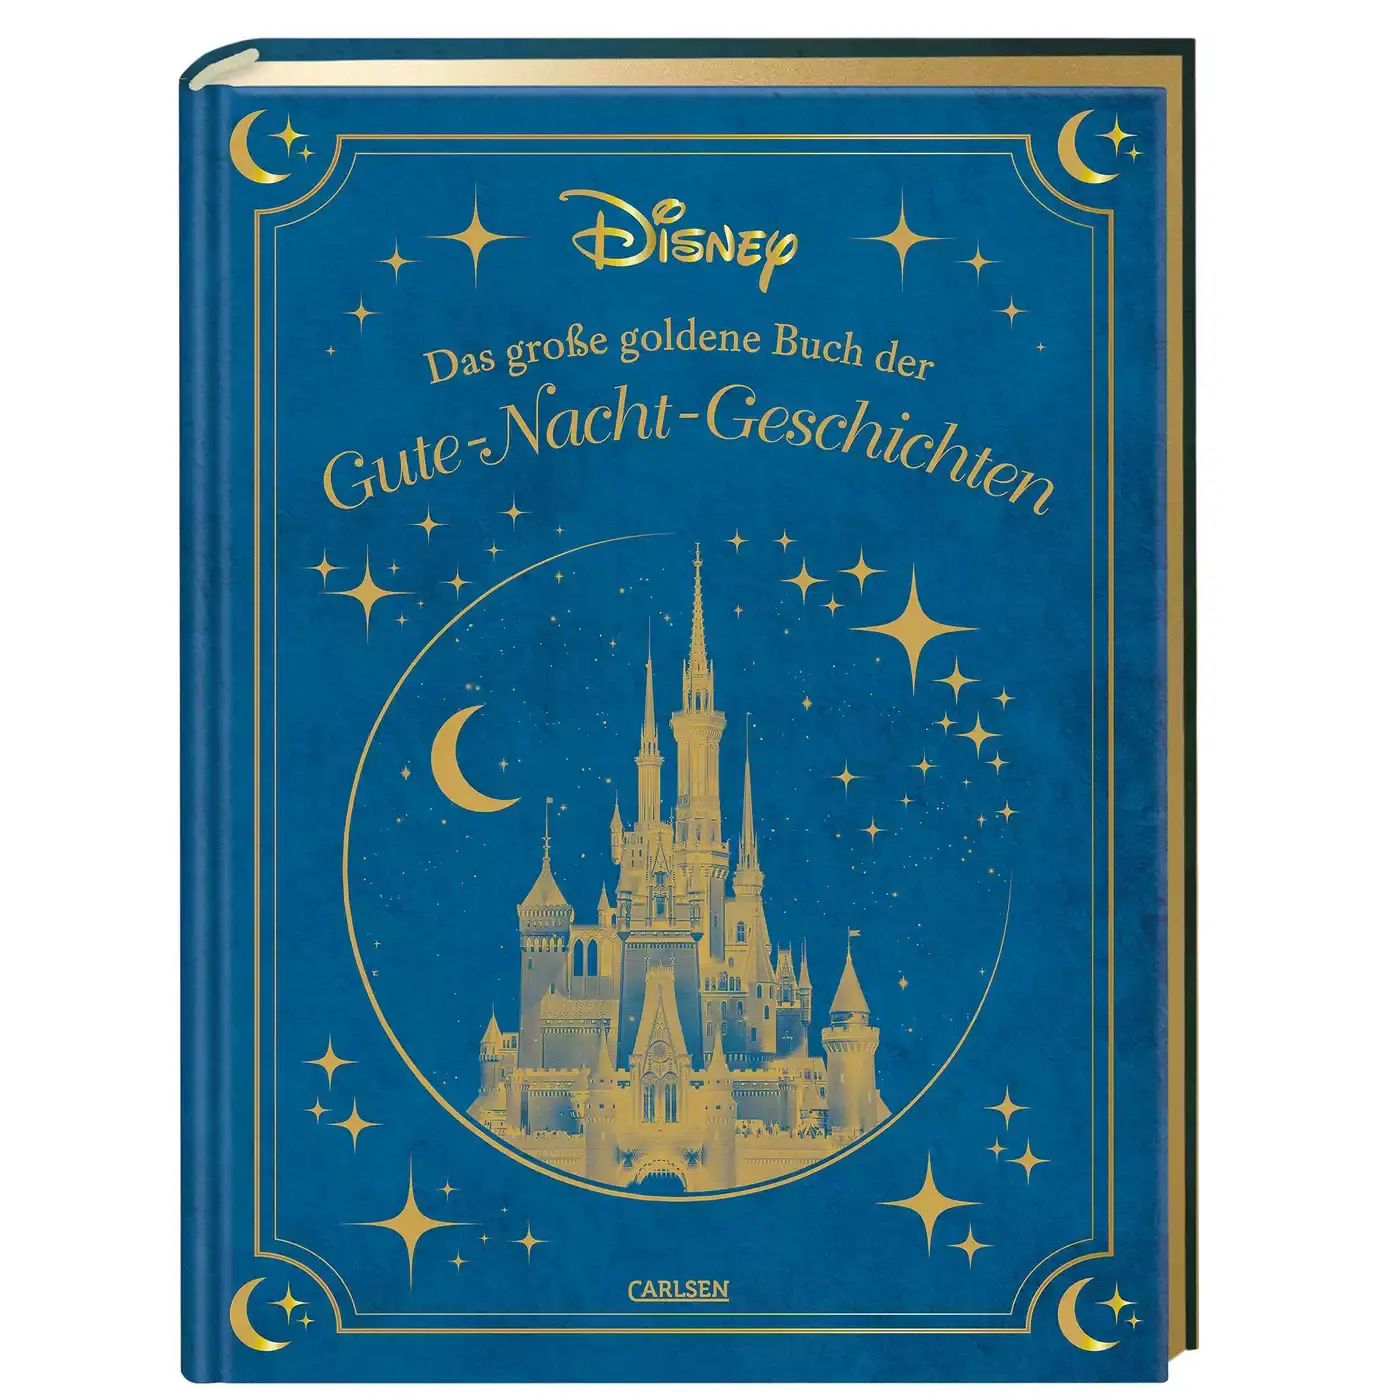 Disney: Das große goldene Buch der Gute-Nacht-Geschichten CARLSEN 2000582216309 1